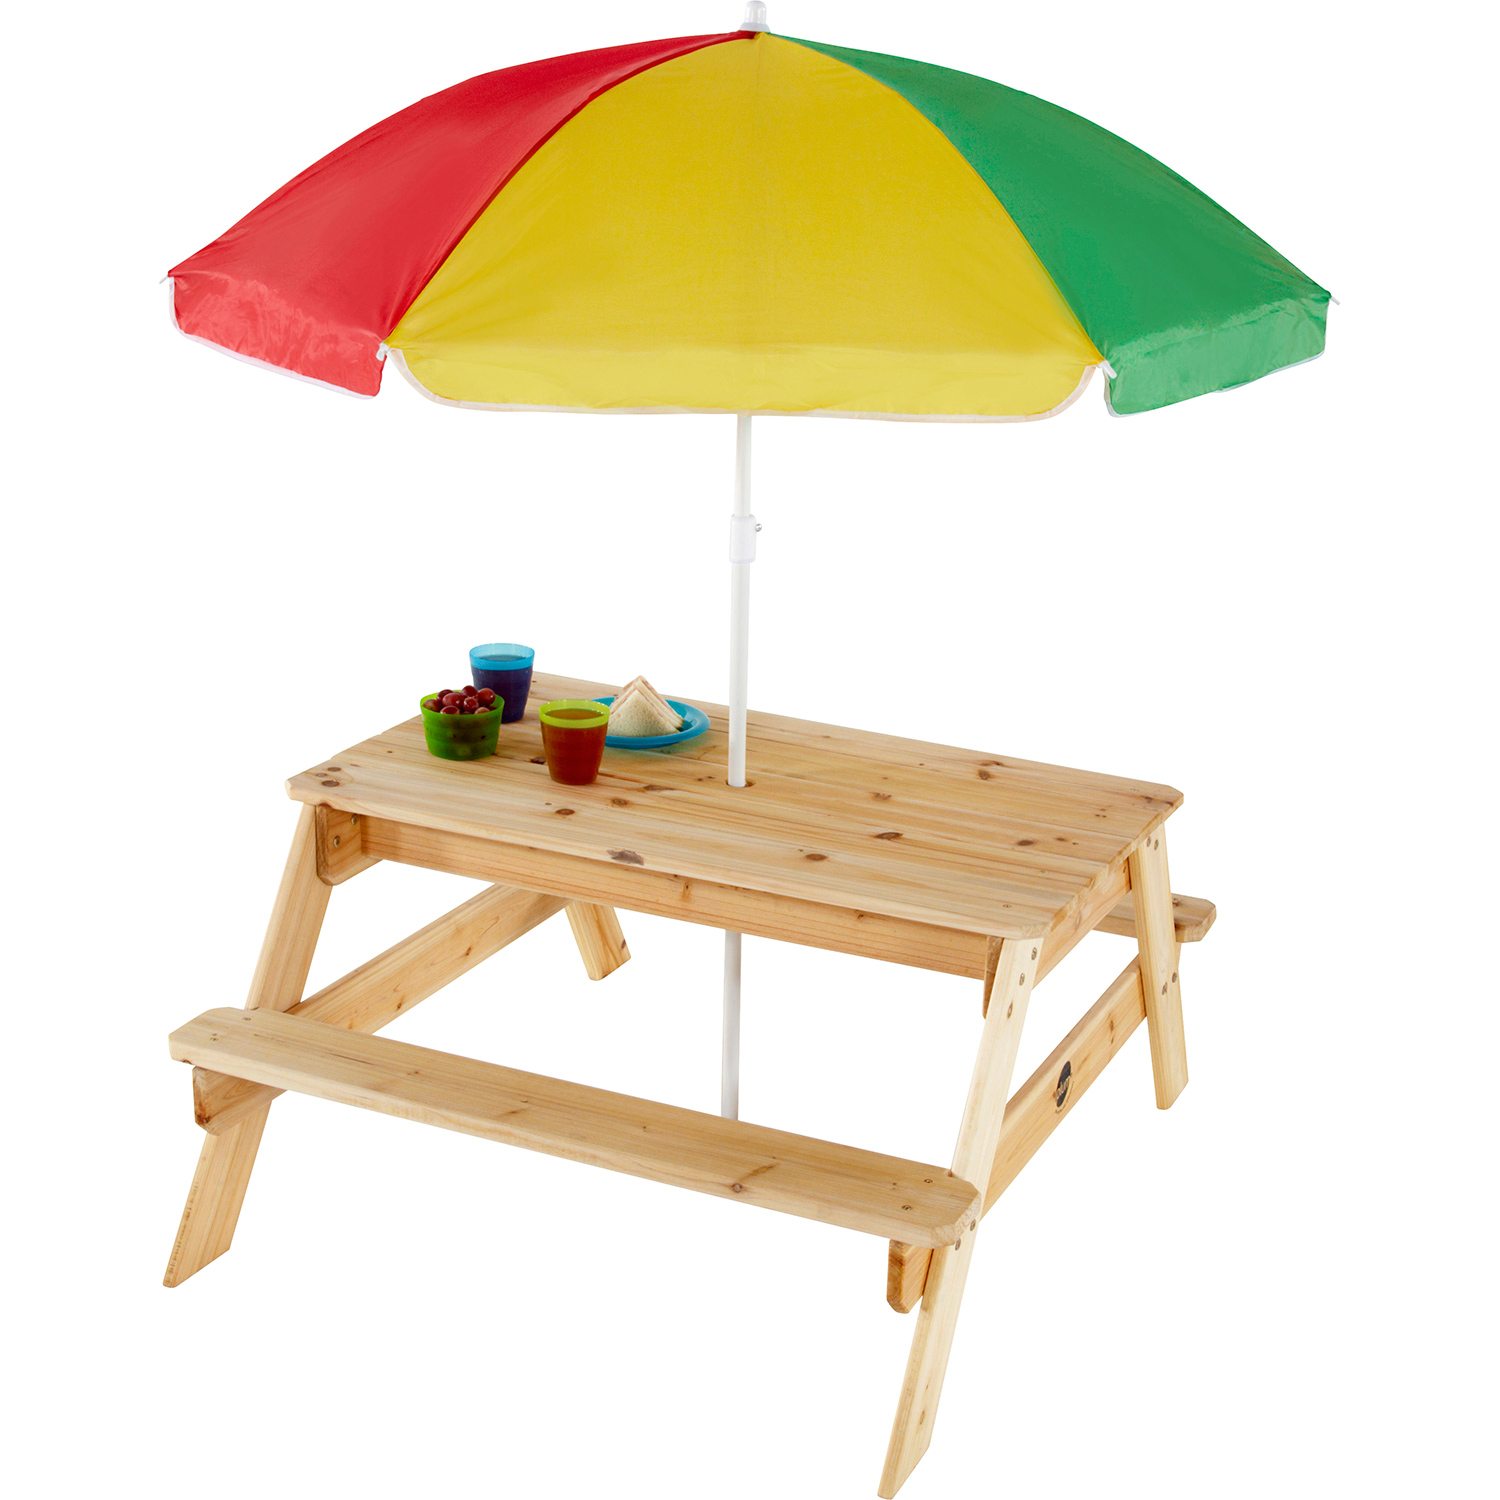 Picknicktisch mit Sonnenschirm Plum